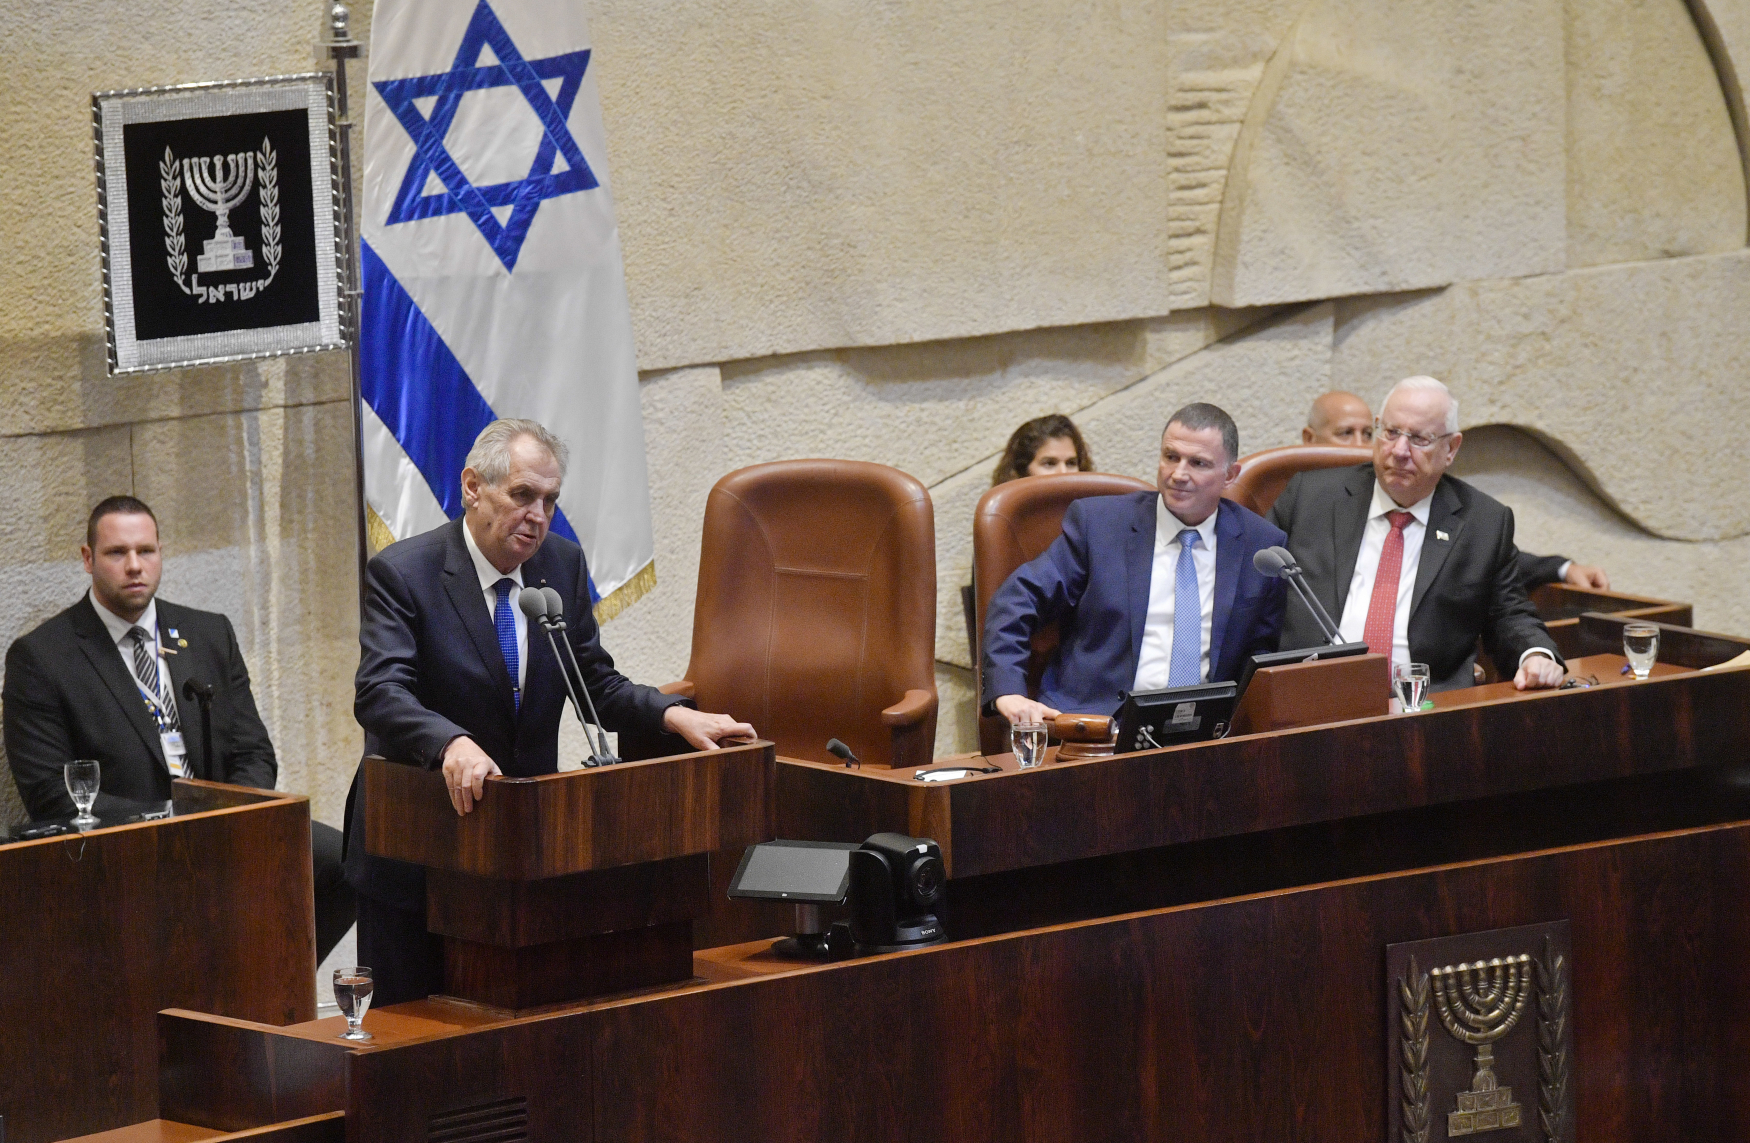 Prezident Miloš Zeman vystoupil na schůzi izraelského parlamentu 26. listopadu 2018. Zprava izraelský prezident Reuven Rivlin a předseda parlamentu Juli Edelstein